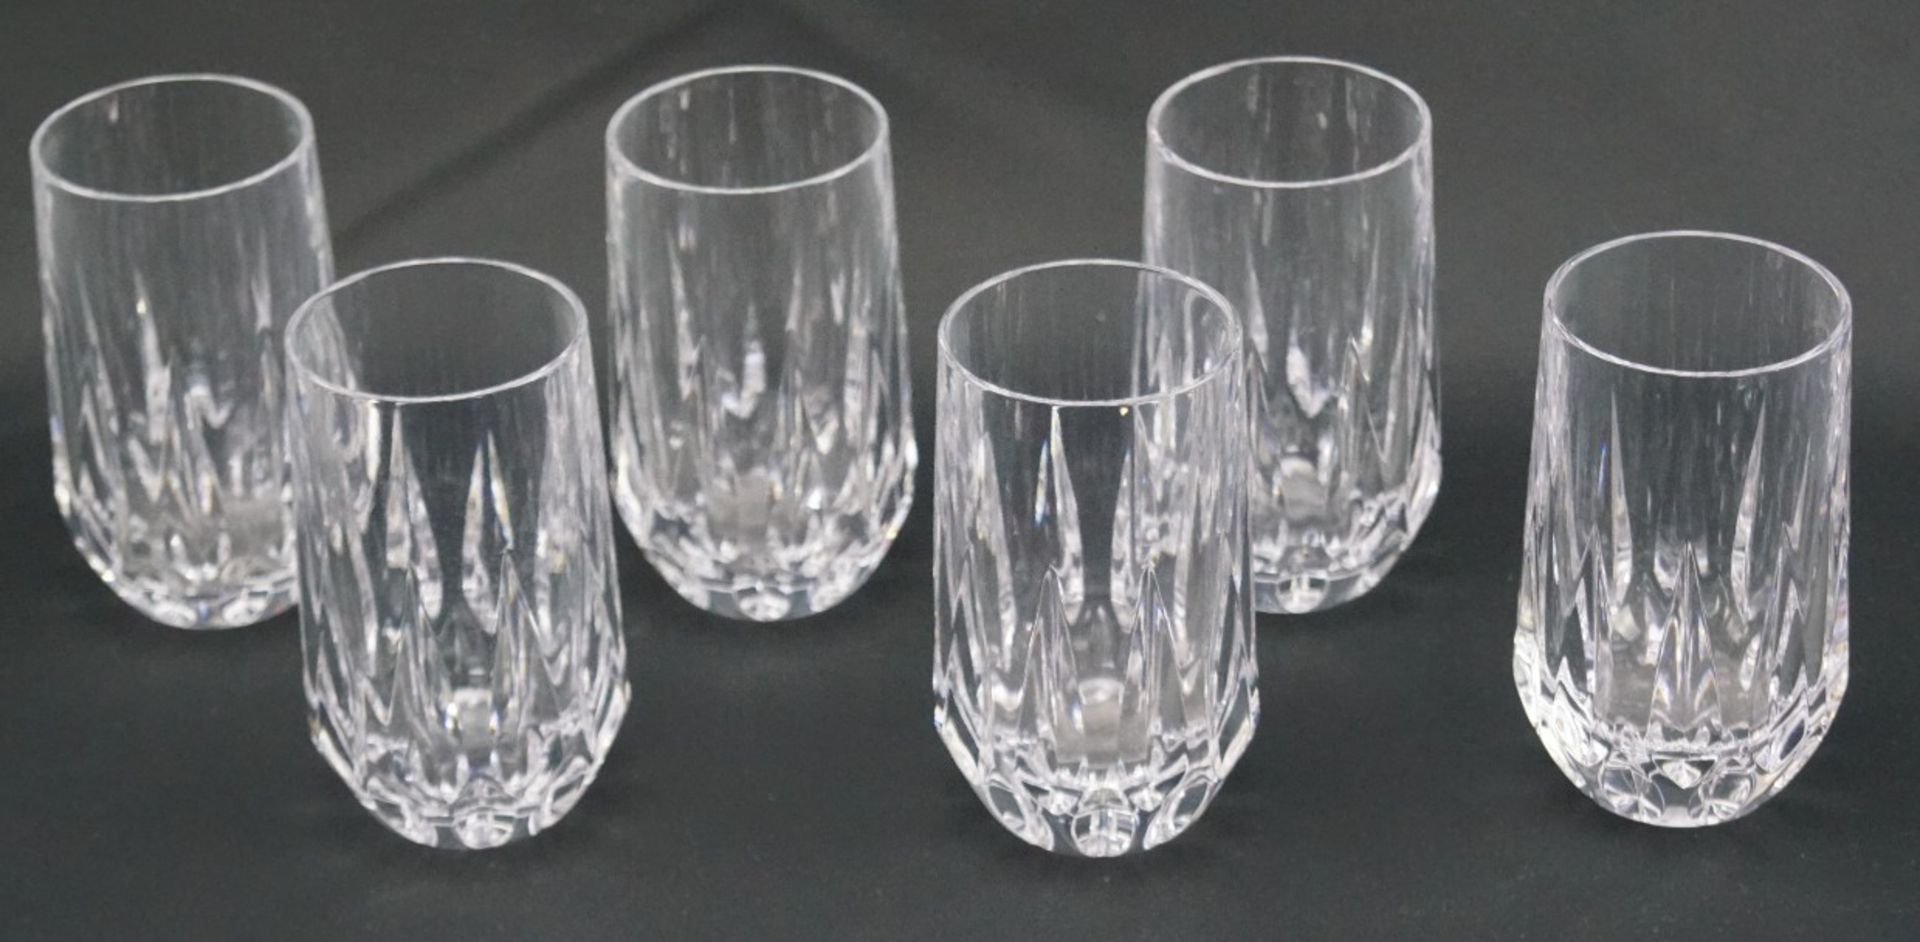 Sechs Bechergläser aus KristallglasKristallglas, Höhe der Gläser 16 cm und Durchmesser 6 cm, in